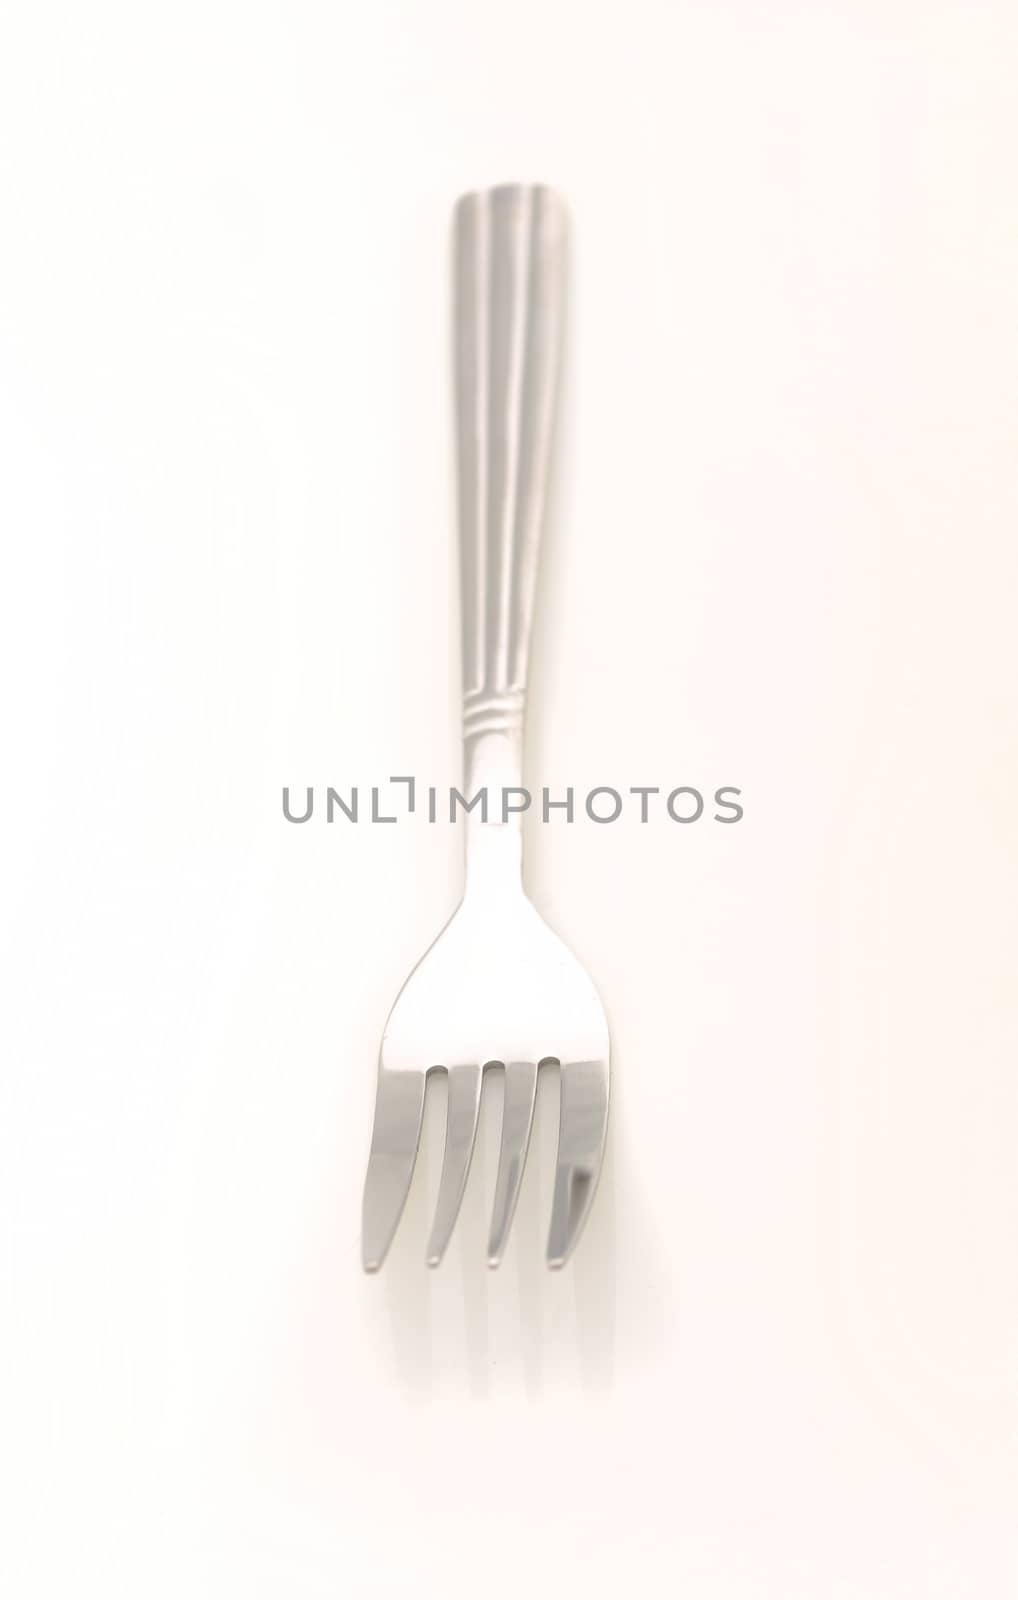 single fork utensil on white background